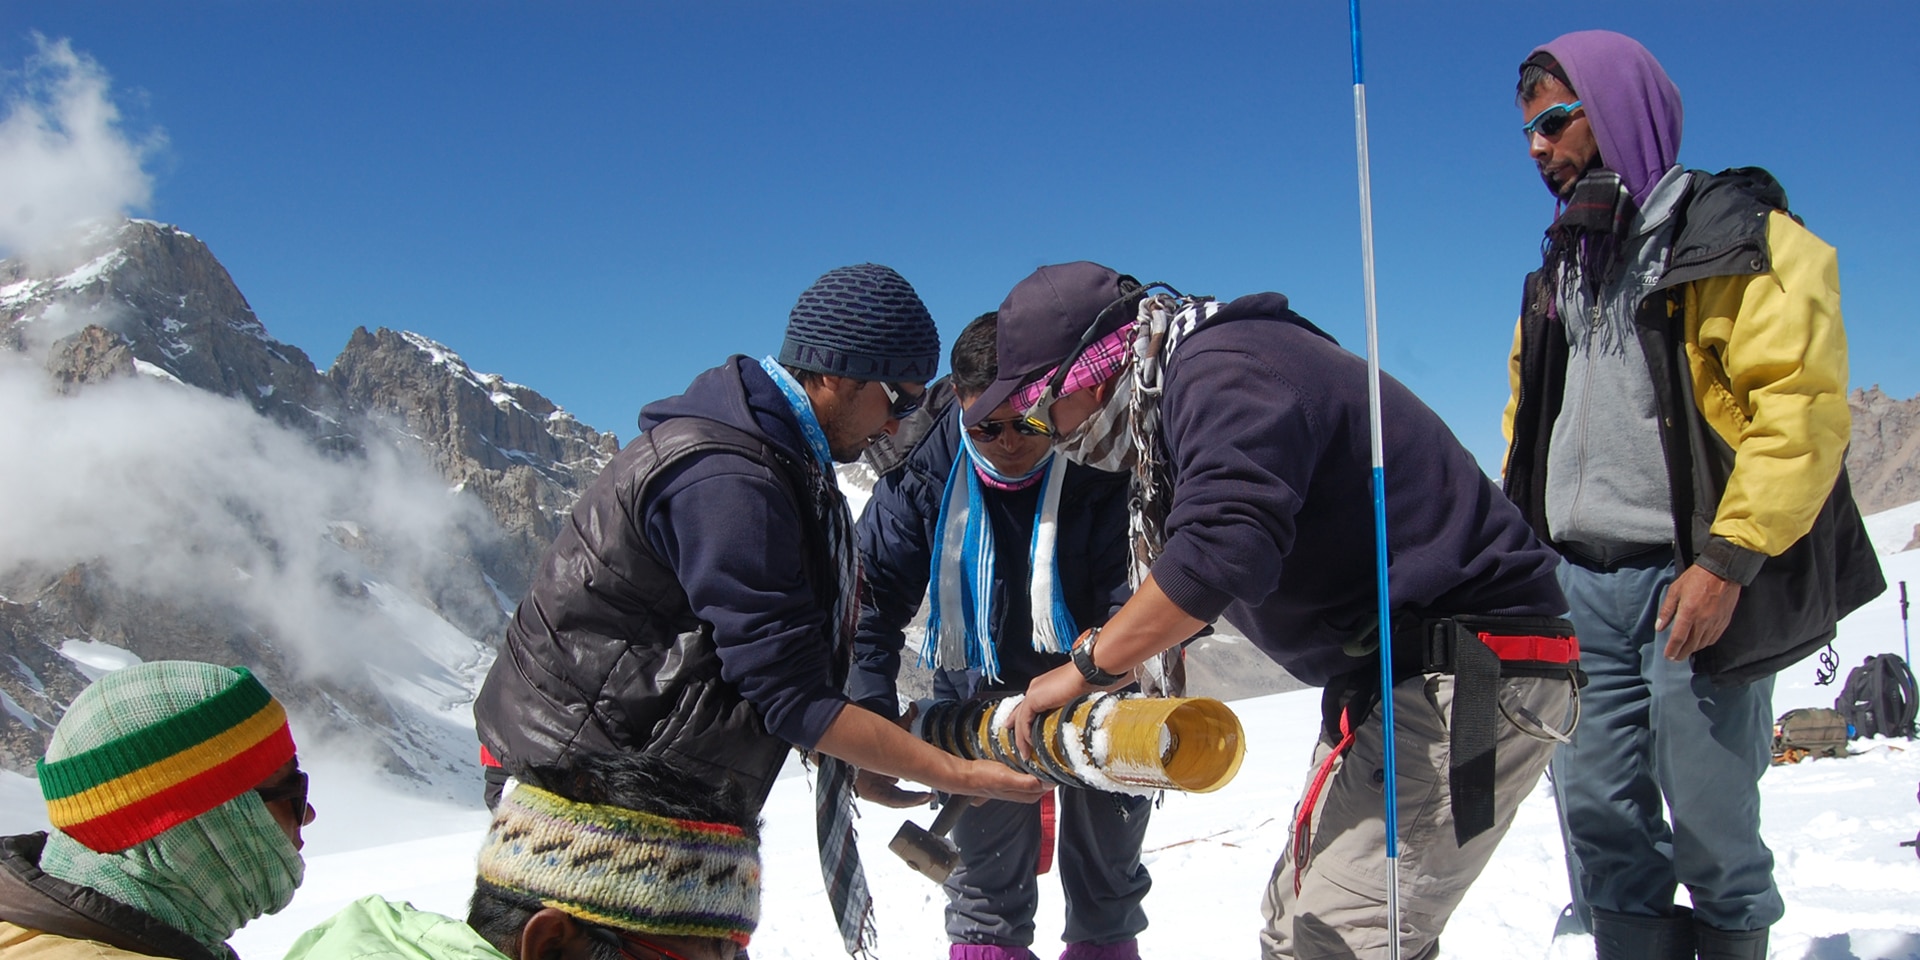 Sept hommes effectuent des mesures scientifiques dans la neige sur un glacier au cœur des montagnes.